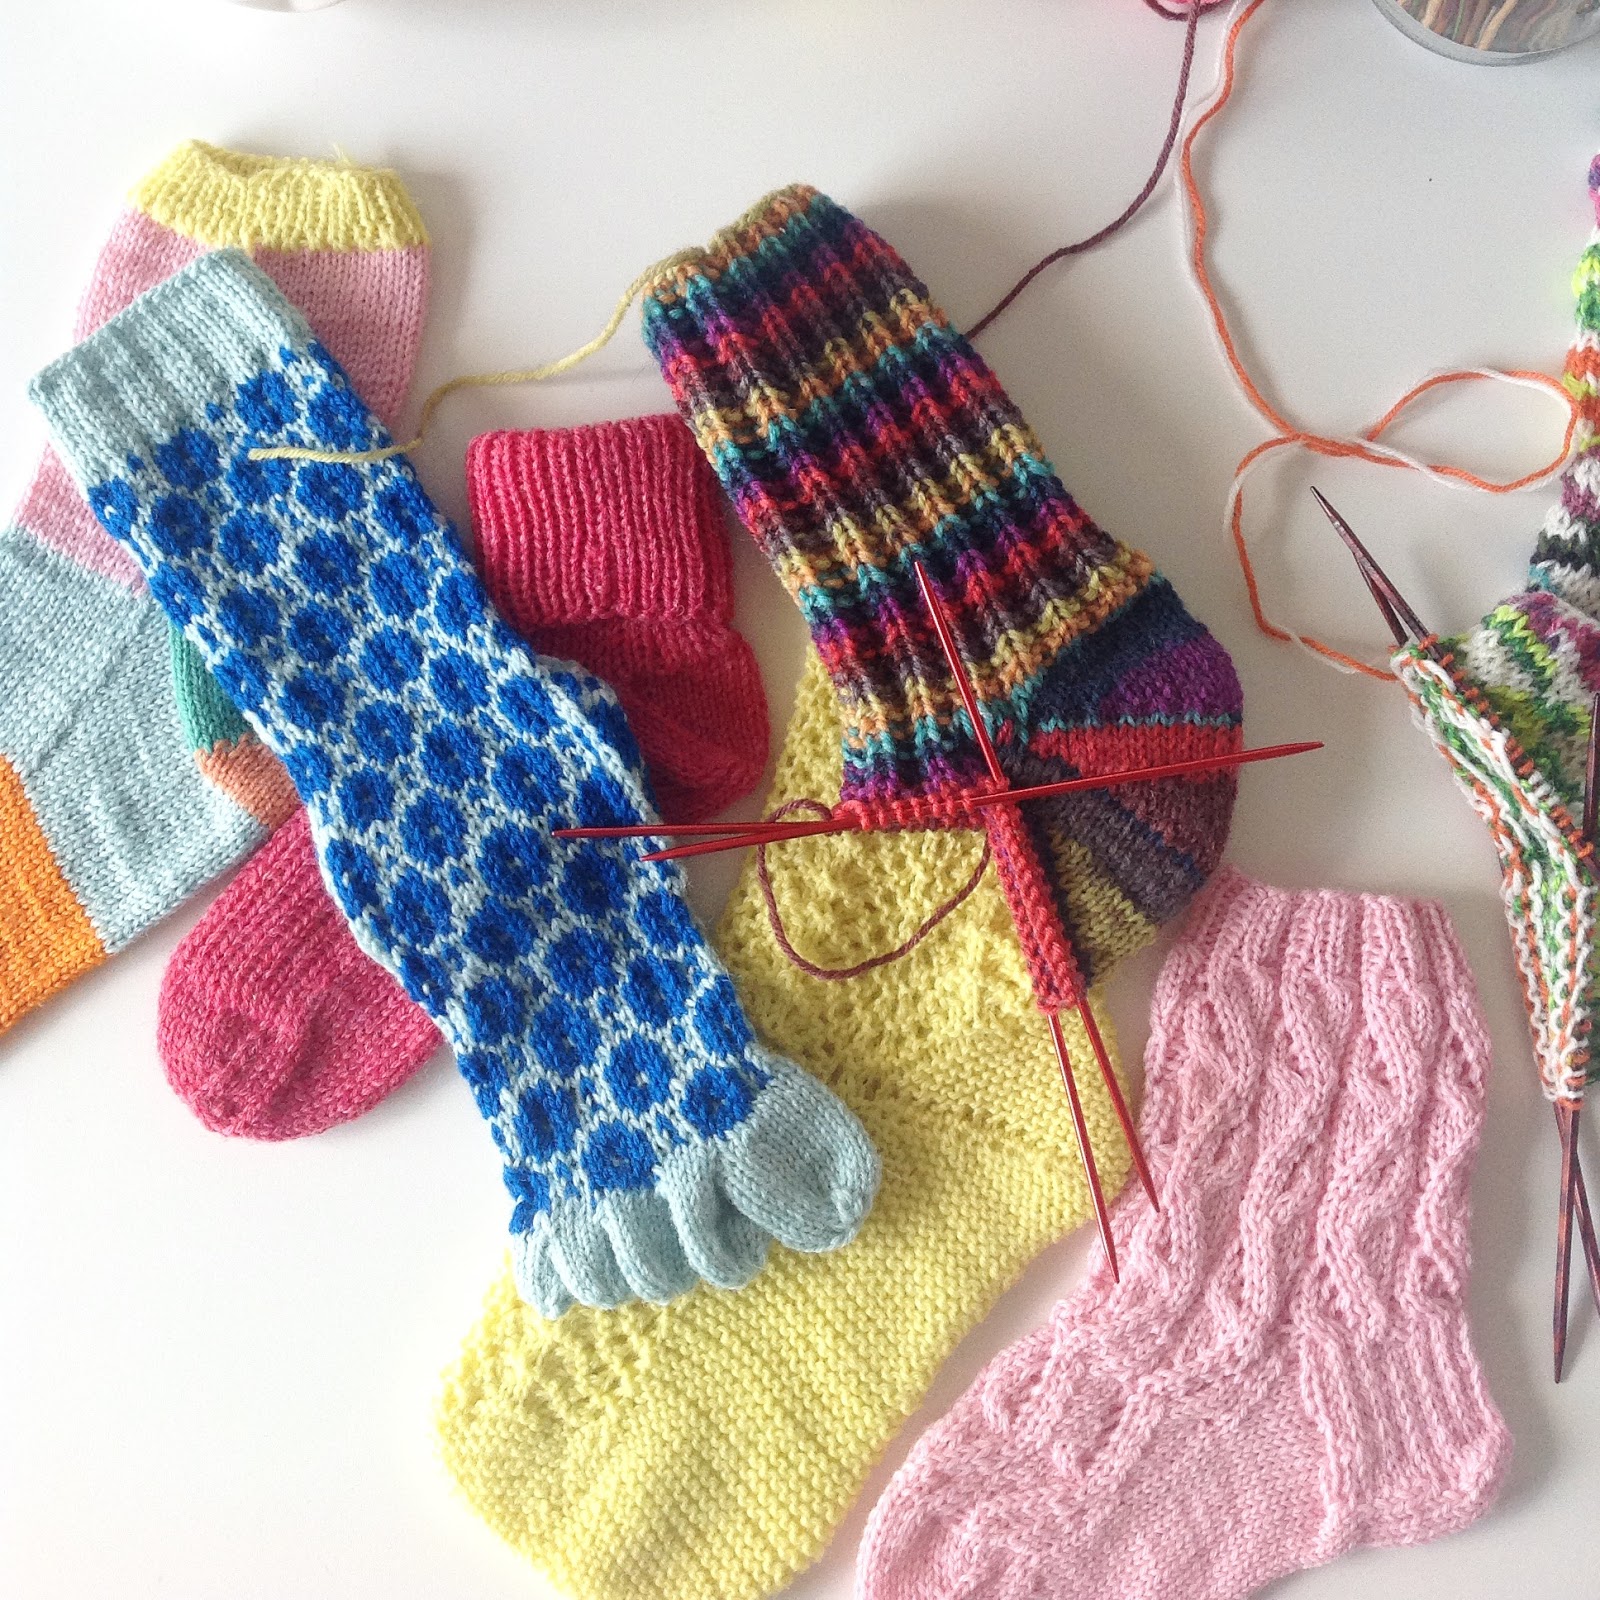 tegnebog Disciplin Autonomi Knitting By Kaae: Strømpe kursus med Charlotte Kaae, Skønne sokker - hug en  hæl, klip en tå